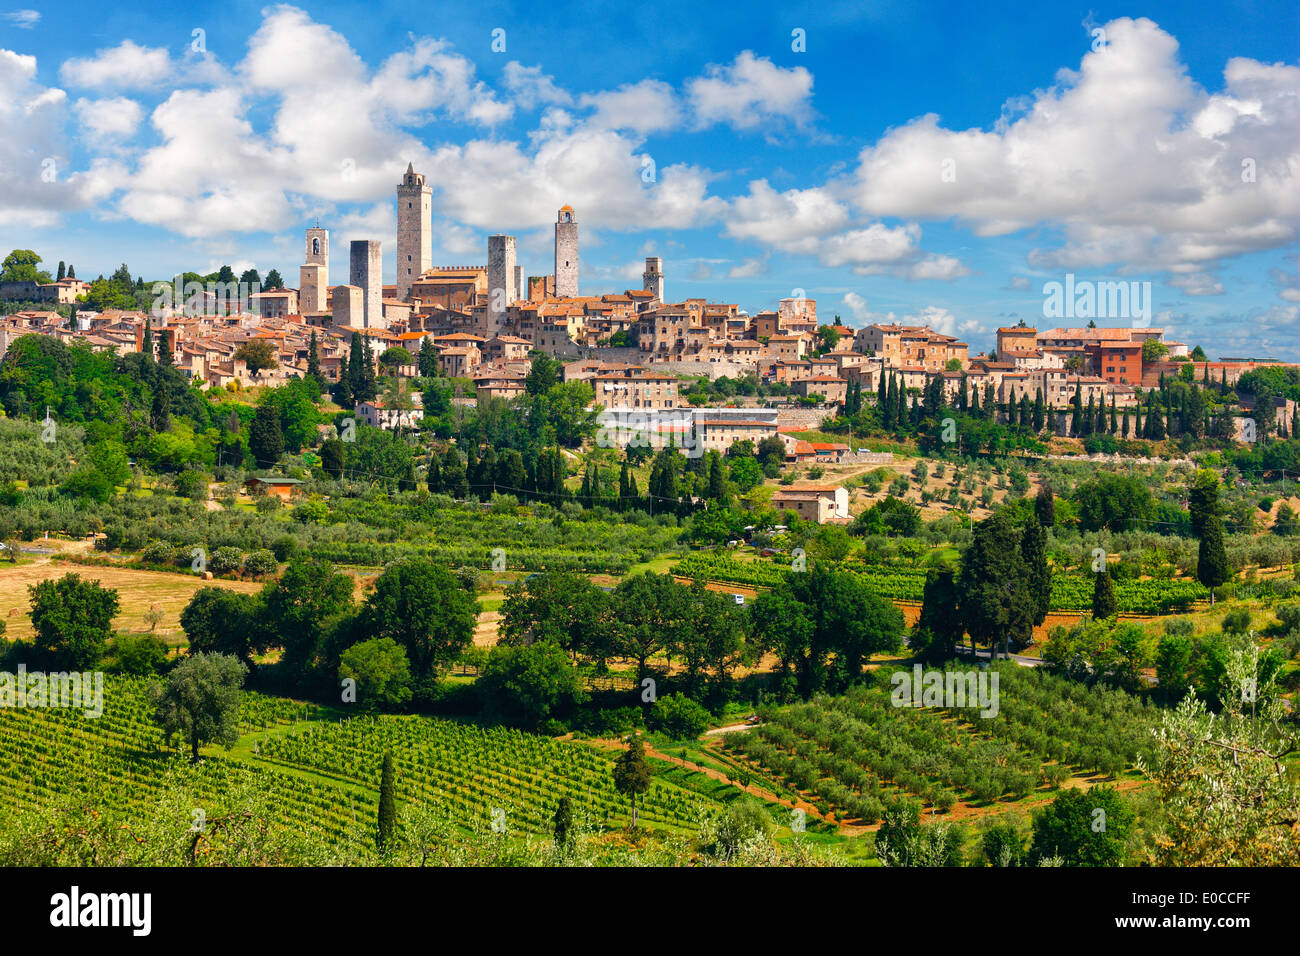 La ville médiévale de San Gimignano en Toscane, Italie. Une vue panoramique de la ville vallonnée de tours et de beaux nuages. Banque D'Images